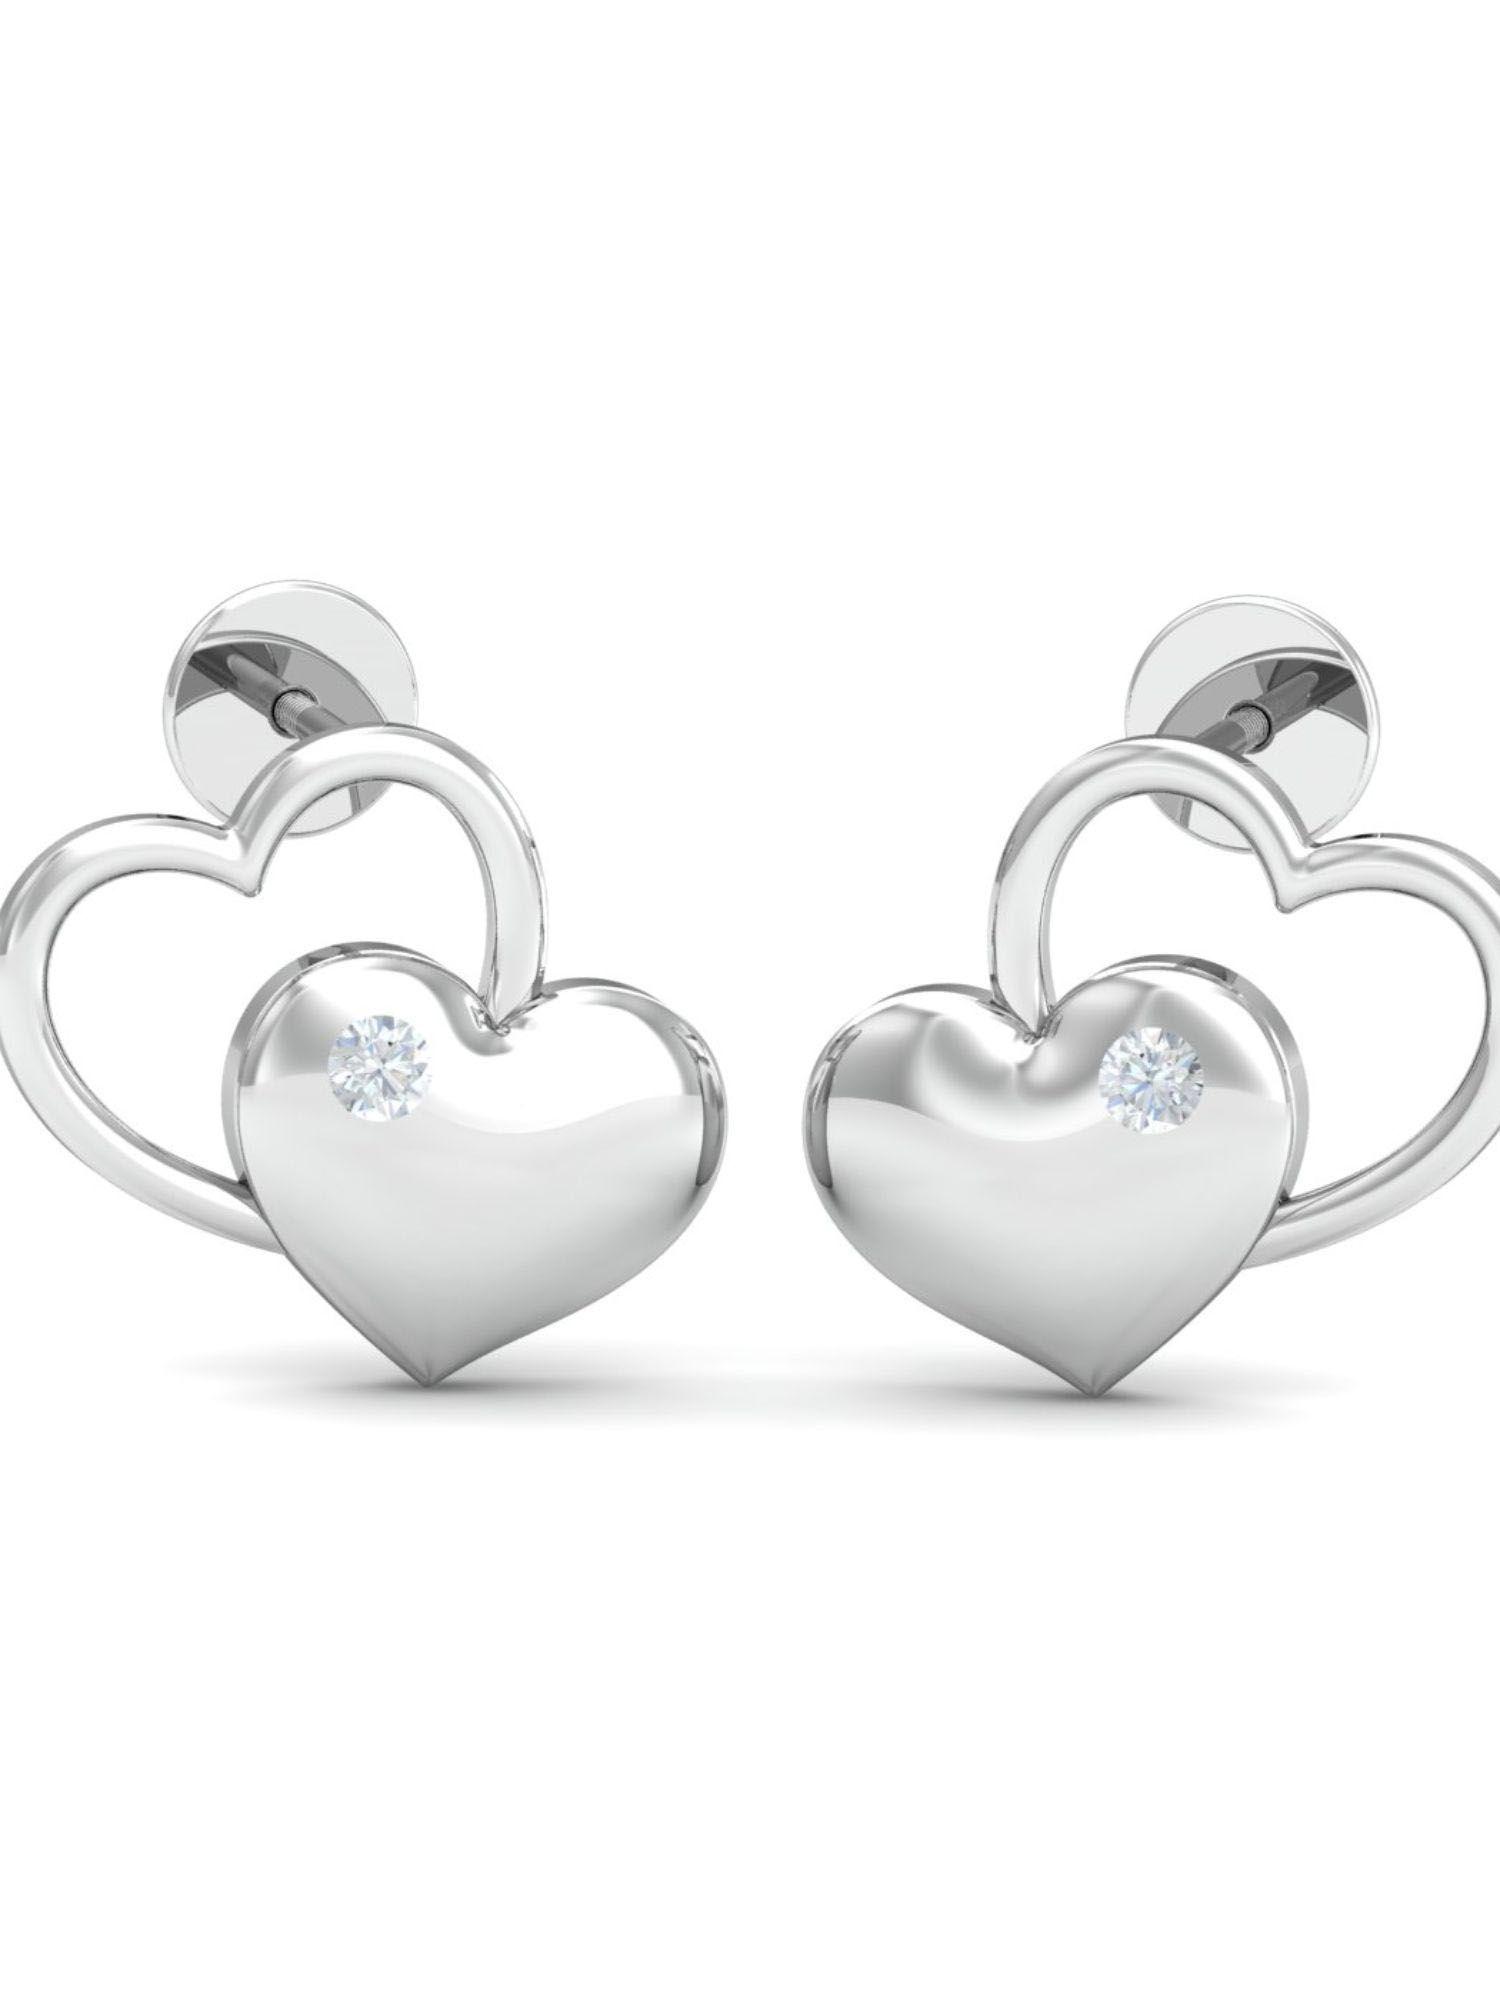 14k matter-of-love heart earrings for women and girls